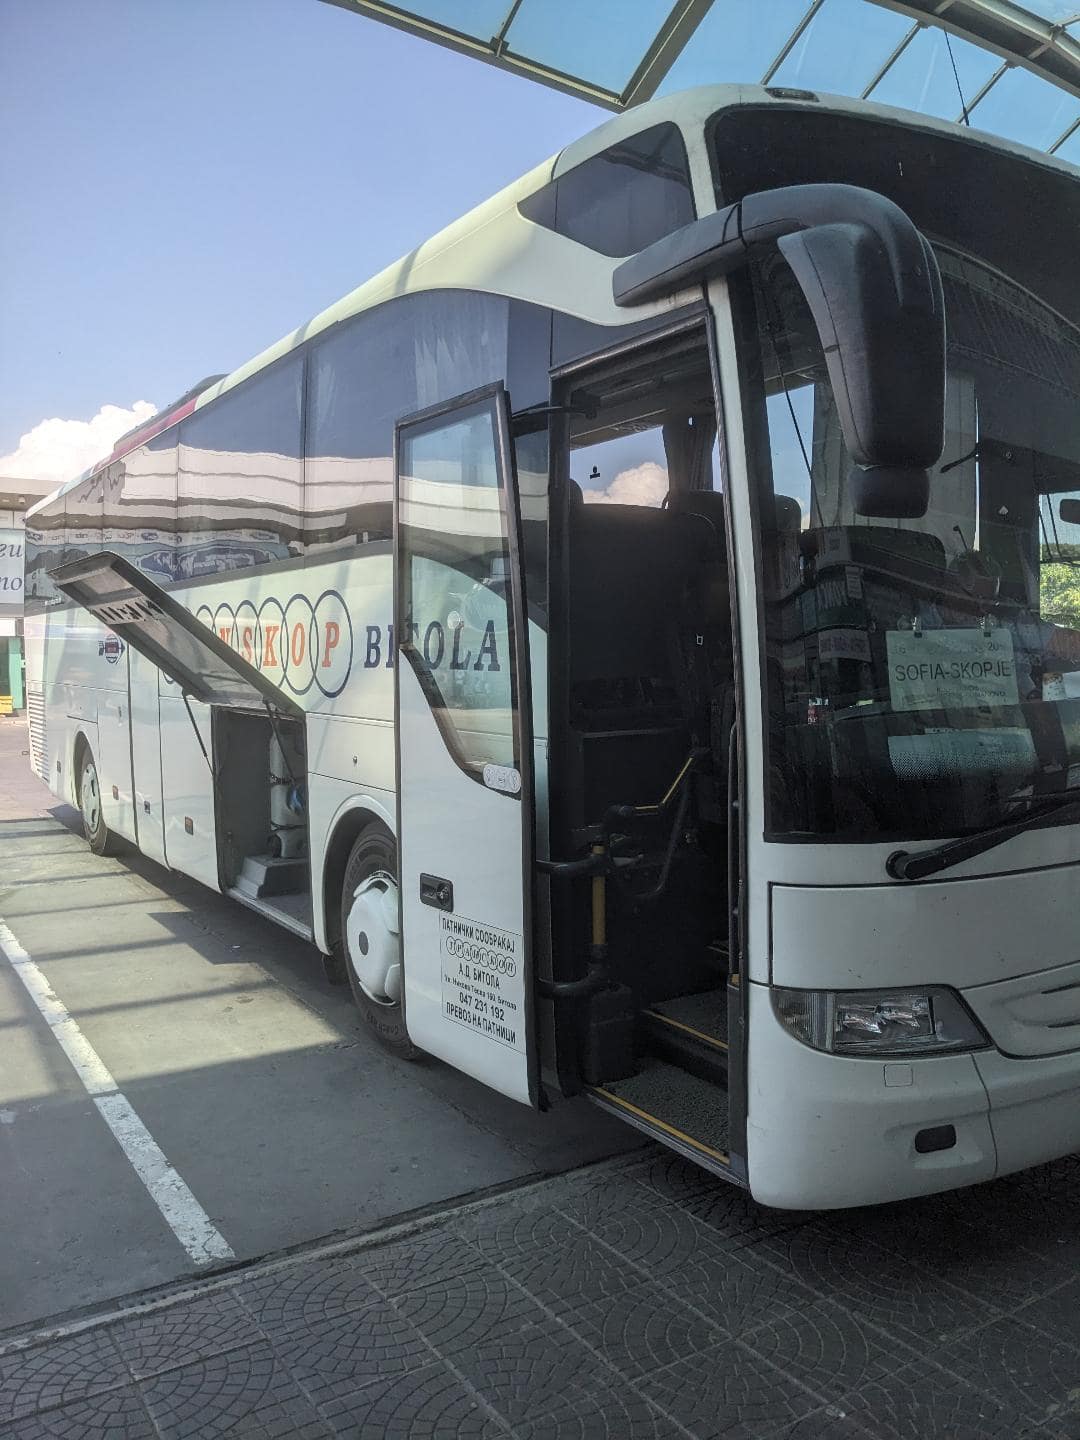 Biely autobus, ktorý jazdí z mesta Sofia do Skopje.